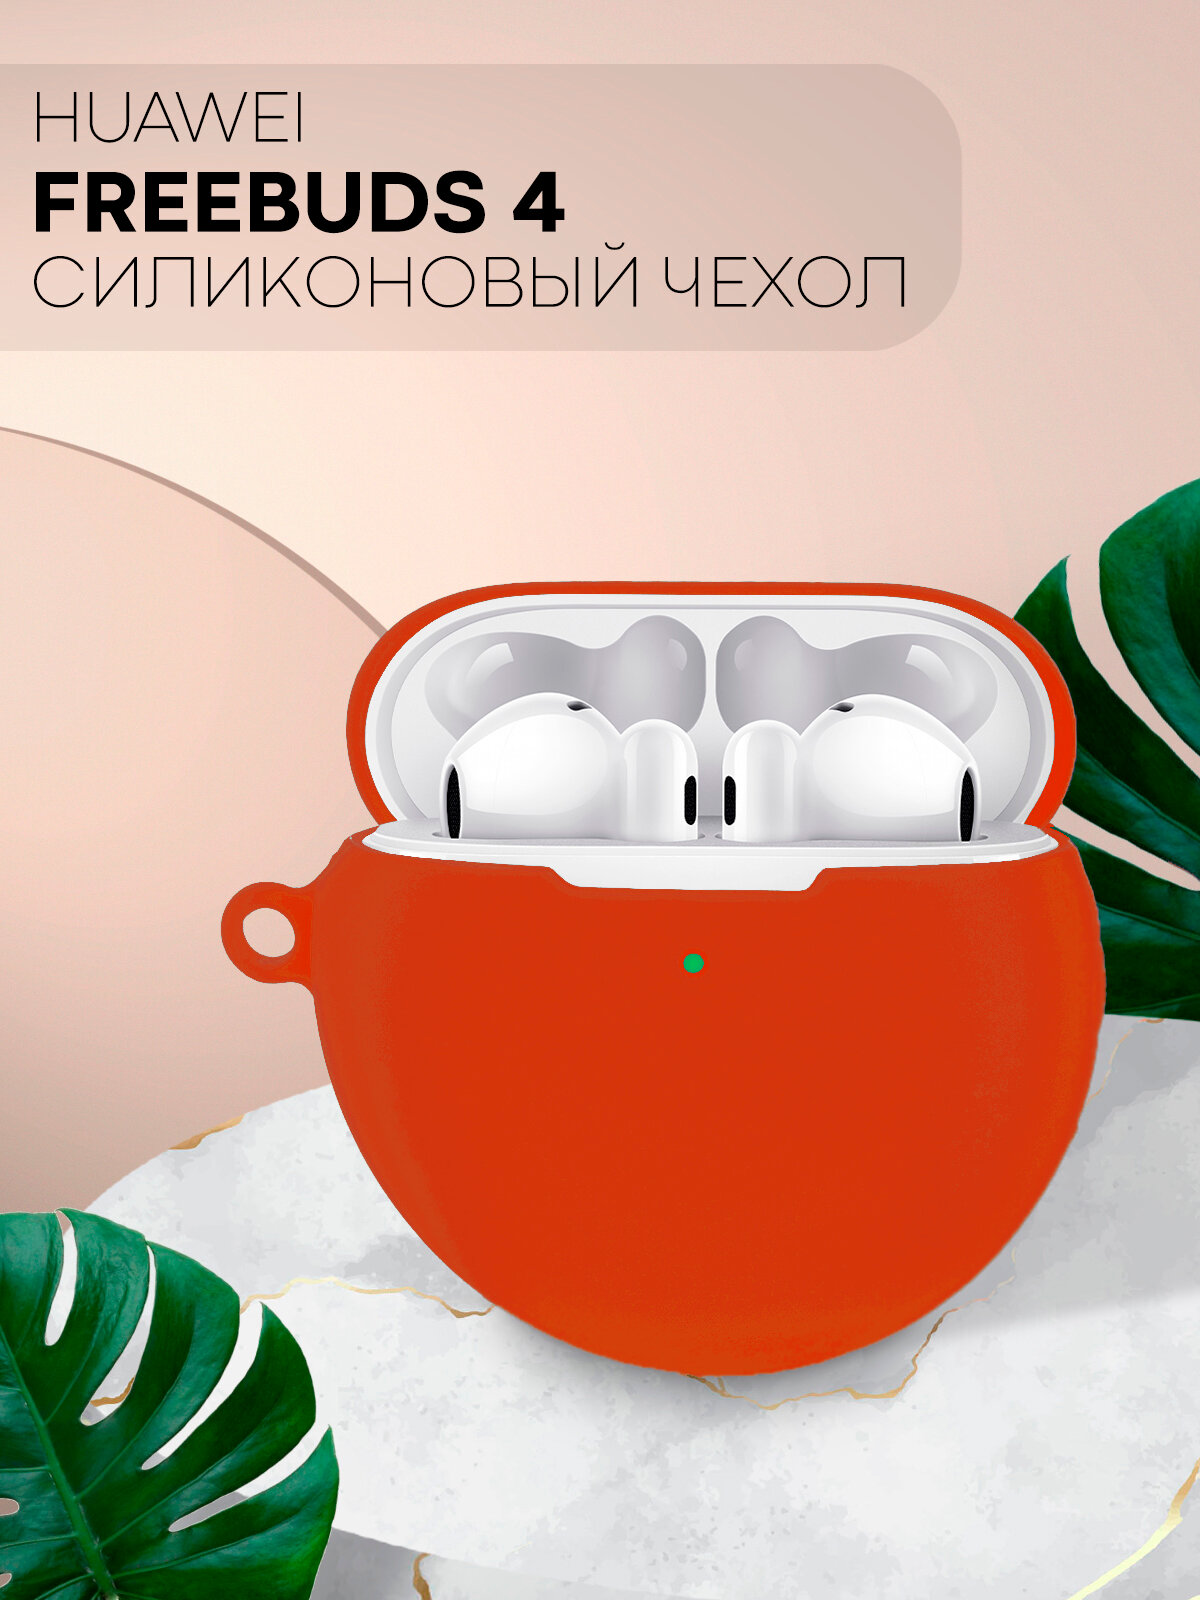 Чехол для Huawei FreeBuds 4 (Хуавей Фрибадс 4), силиконовый чехол, с soft-touch покрытием, красный